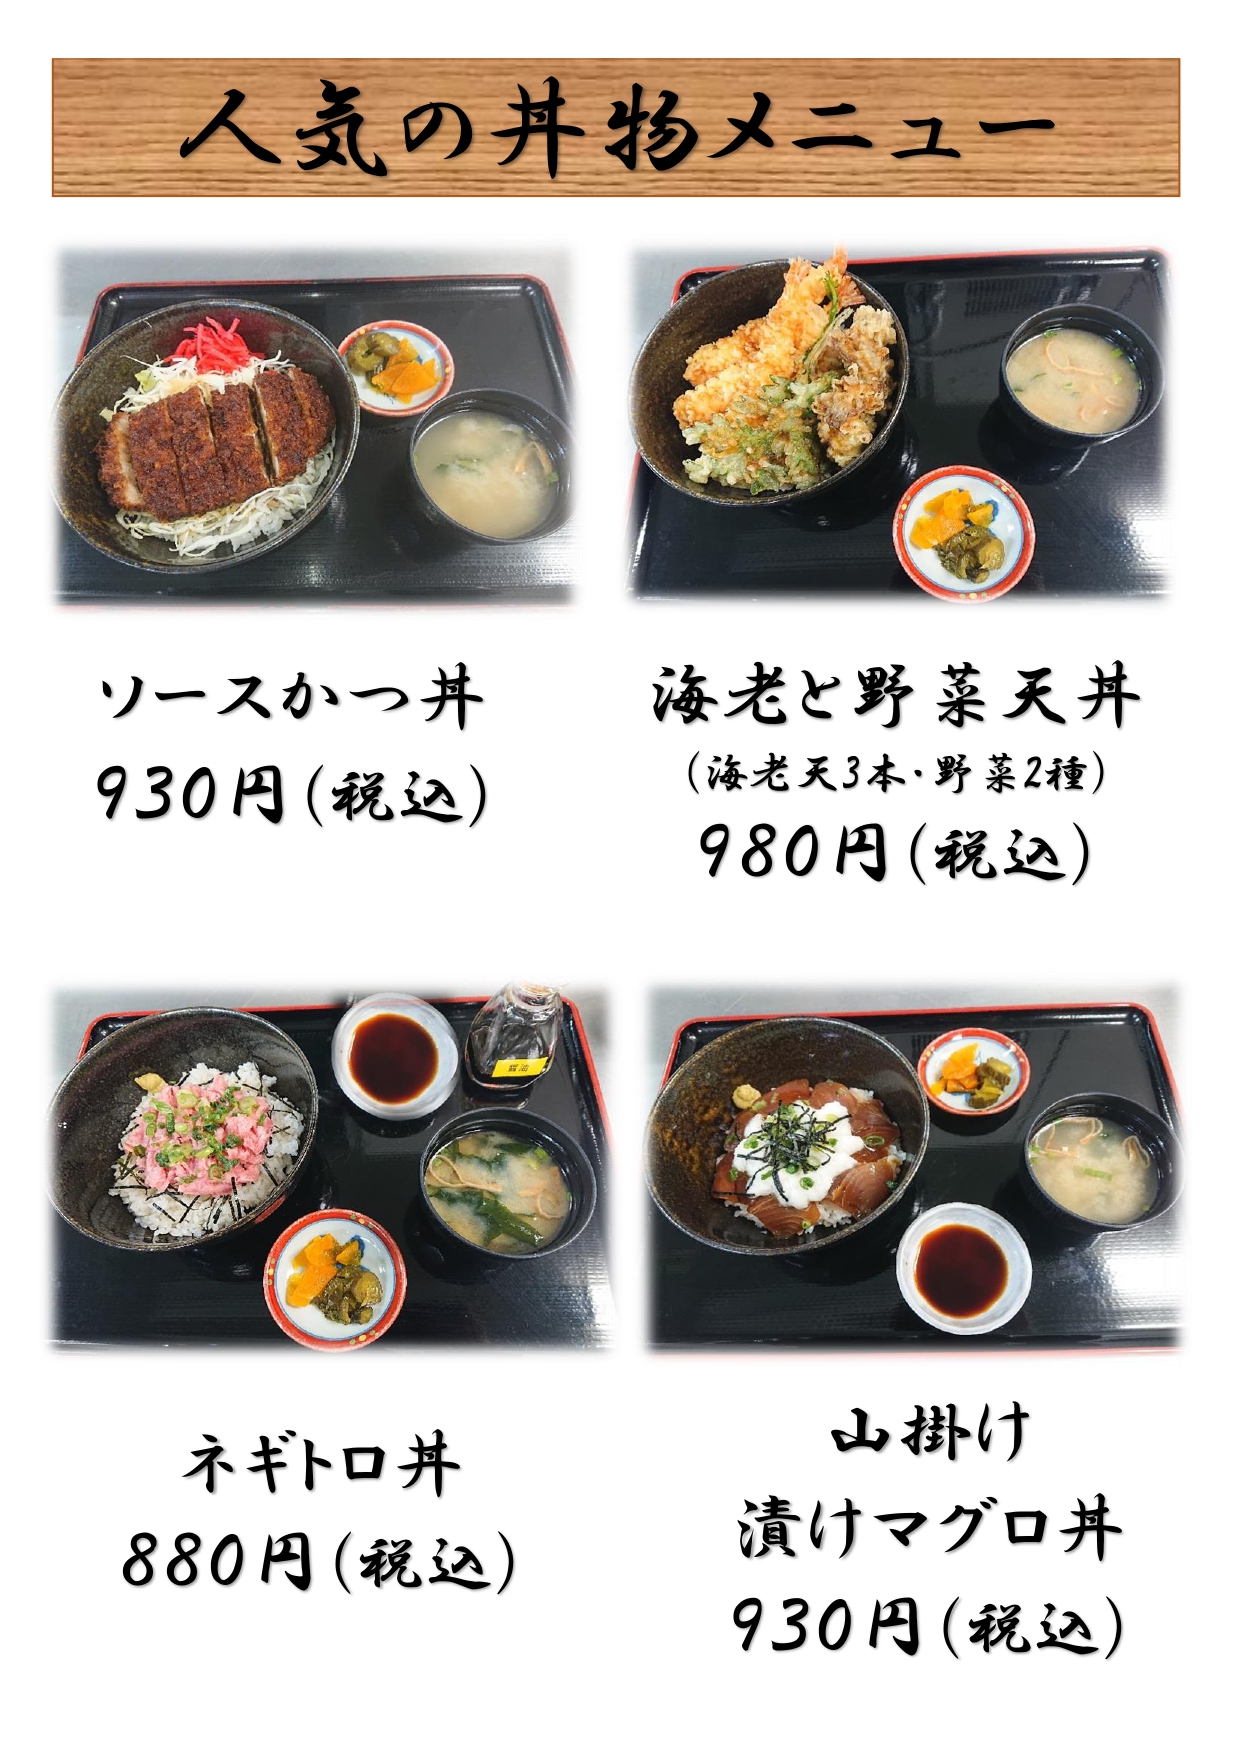 menu 11